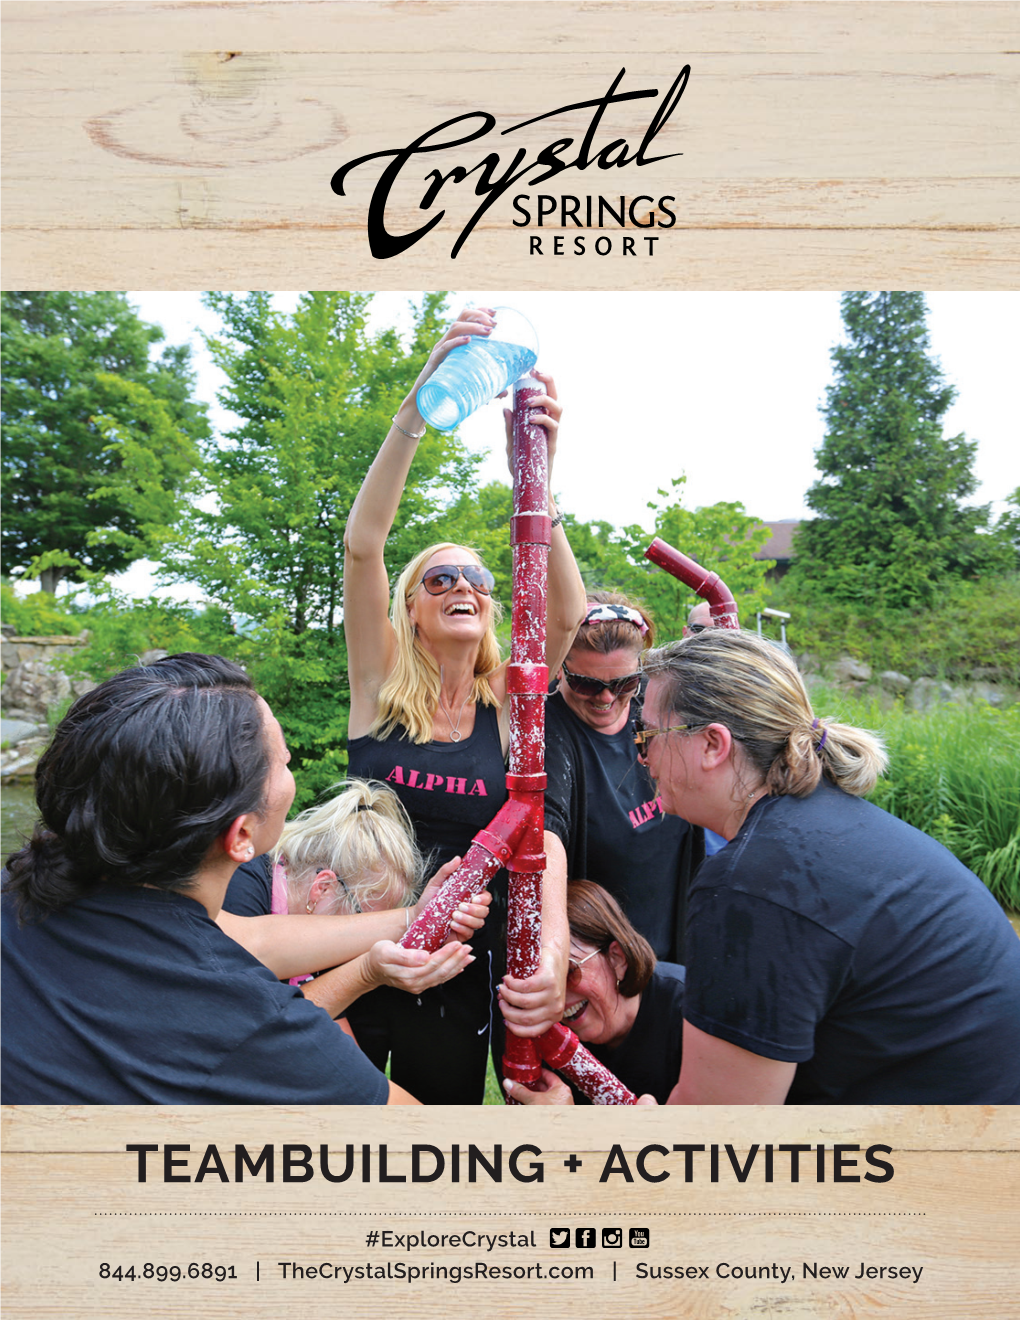 Teambuilding + Activities